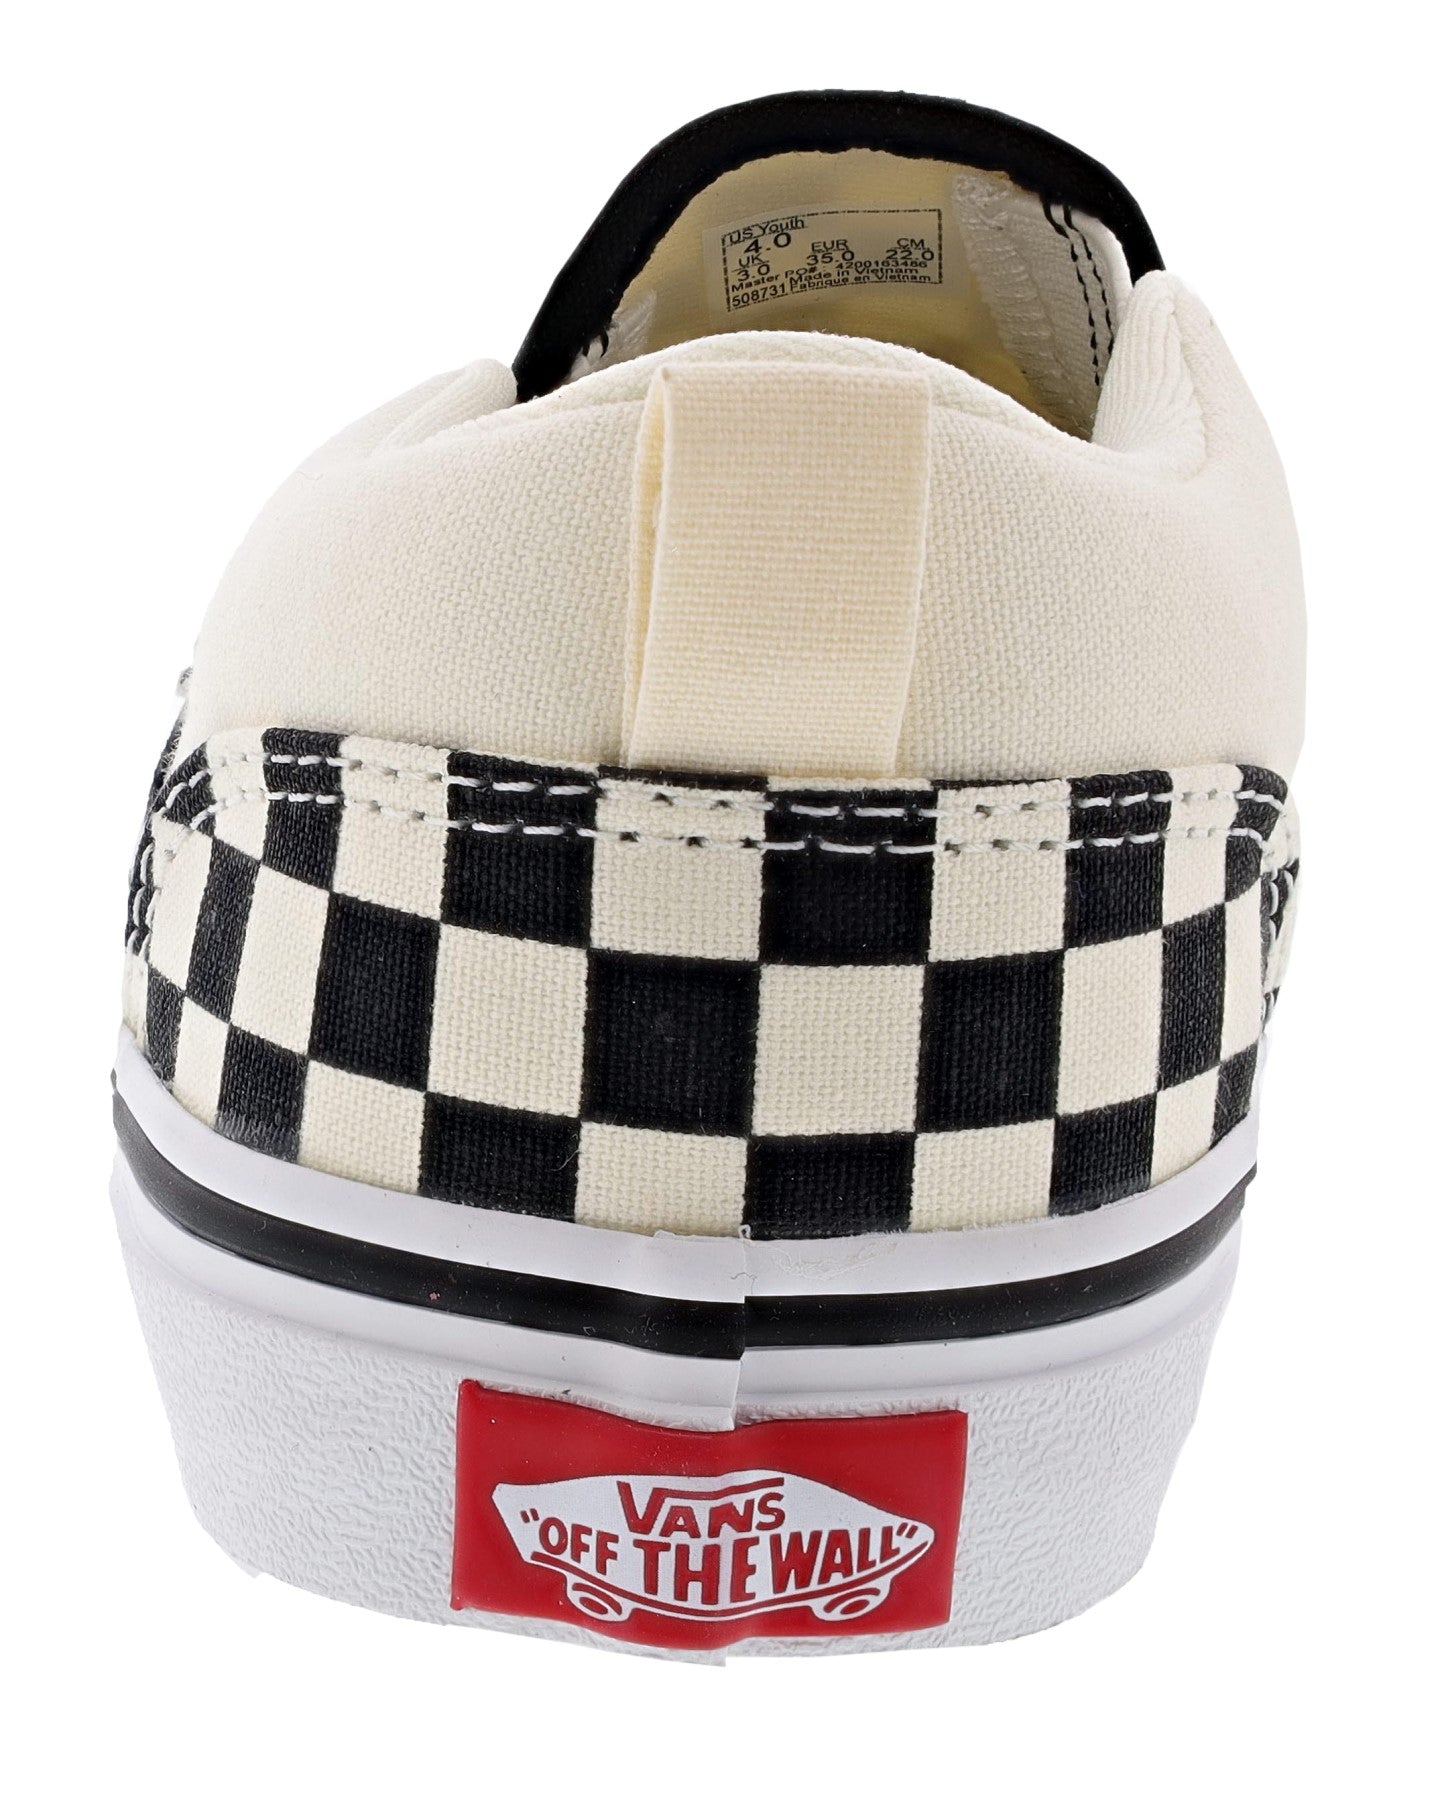 
                  
                    Vans Kid's Asher Checkerboard Slip On Sneakers
                  
                